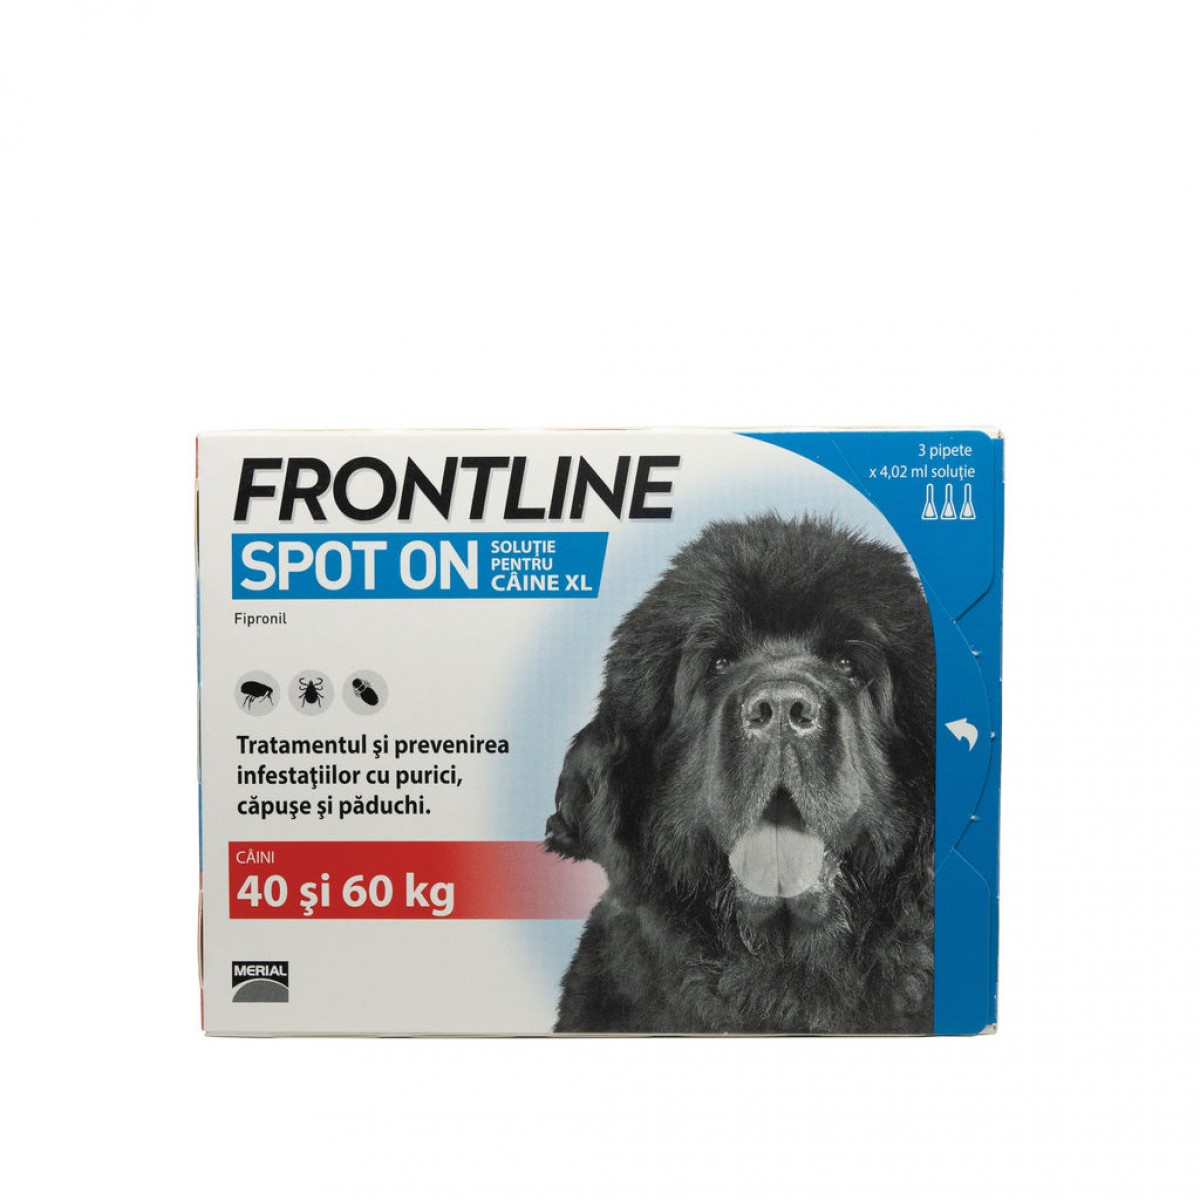 Frontline pentru caini de peste 40kg, 3 pipete antiparazitare, Antiparazitare externe, Antiparazitare, Câini 